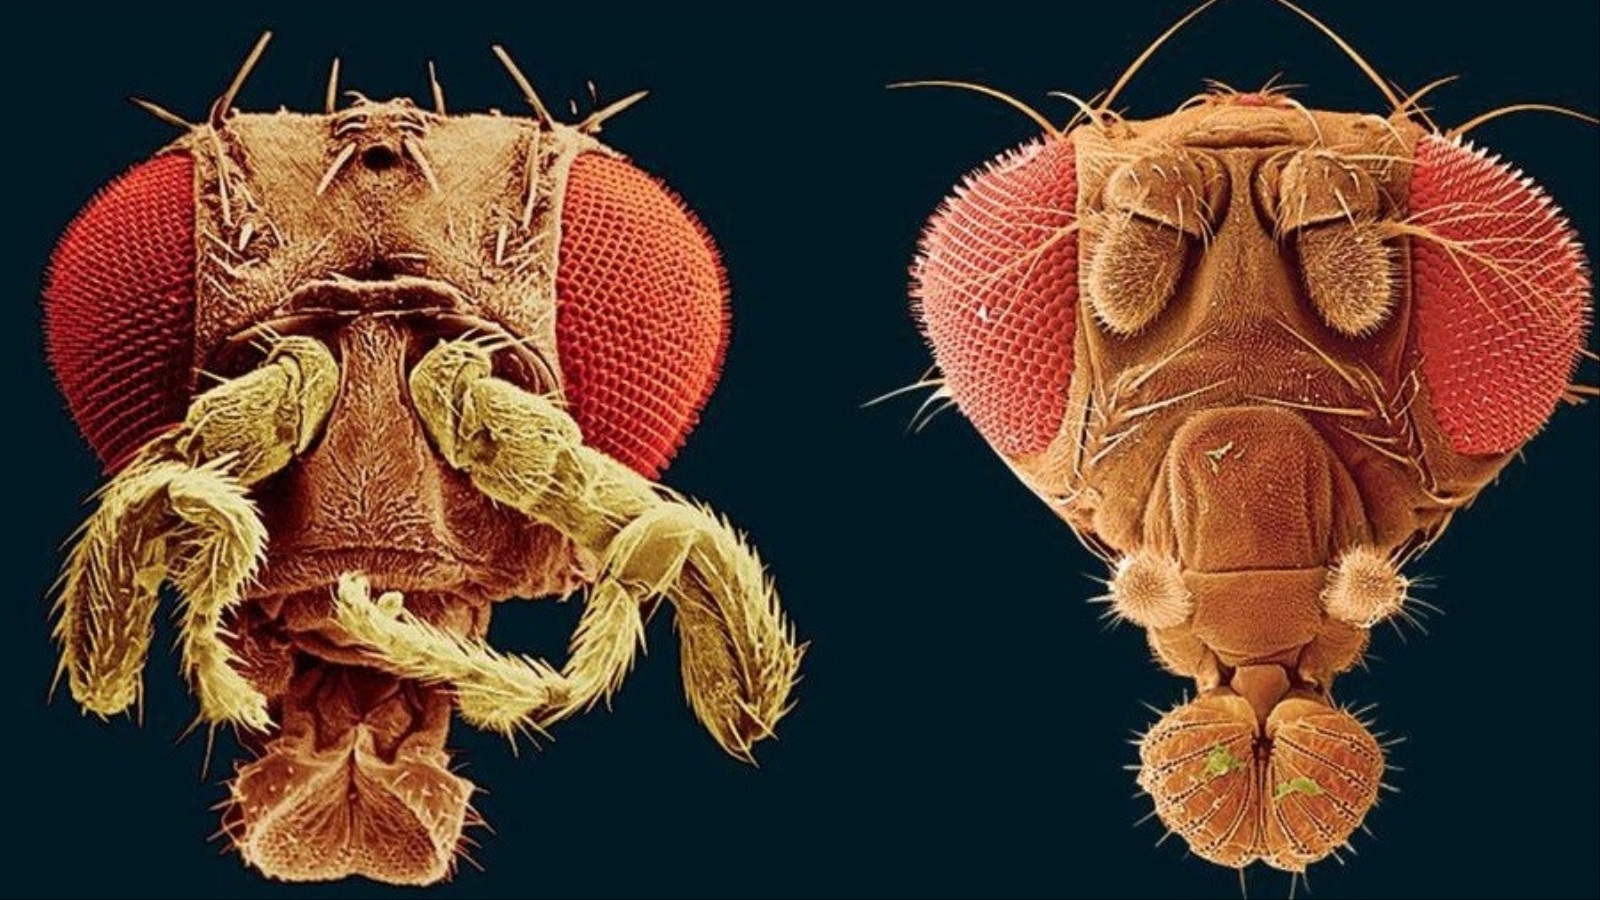 على اليمين، ذبابة فاكهة بقرون استشعار طبيعية. إلى اليسار، ذبابة فاكهة بأقدام موضع قرون الاستشعار.